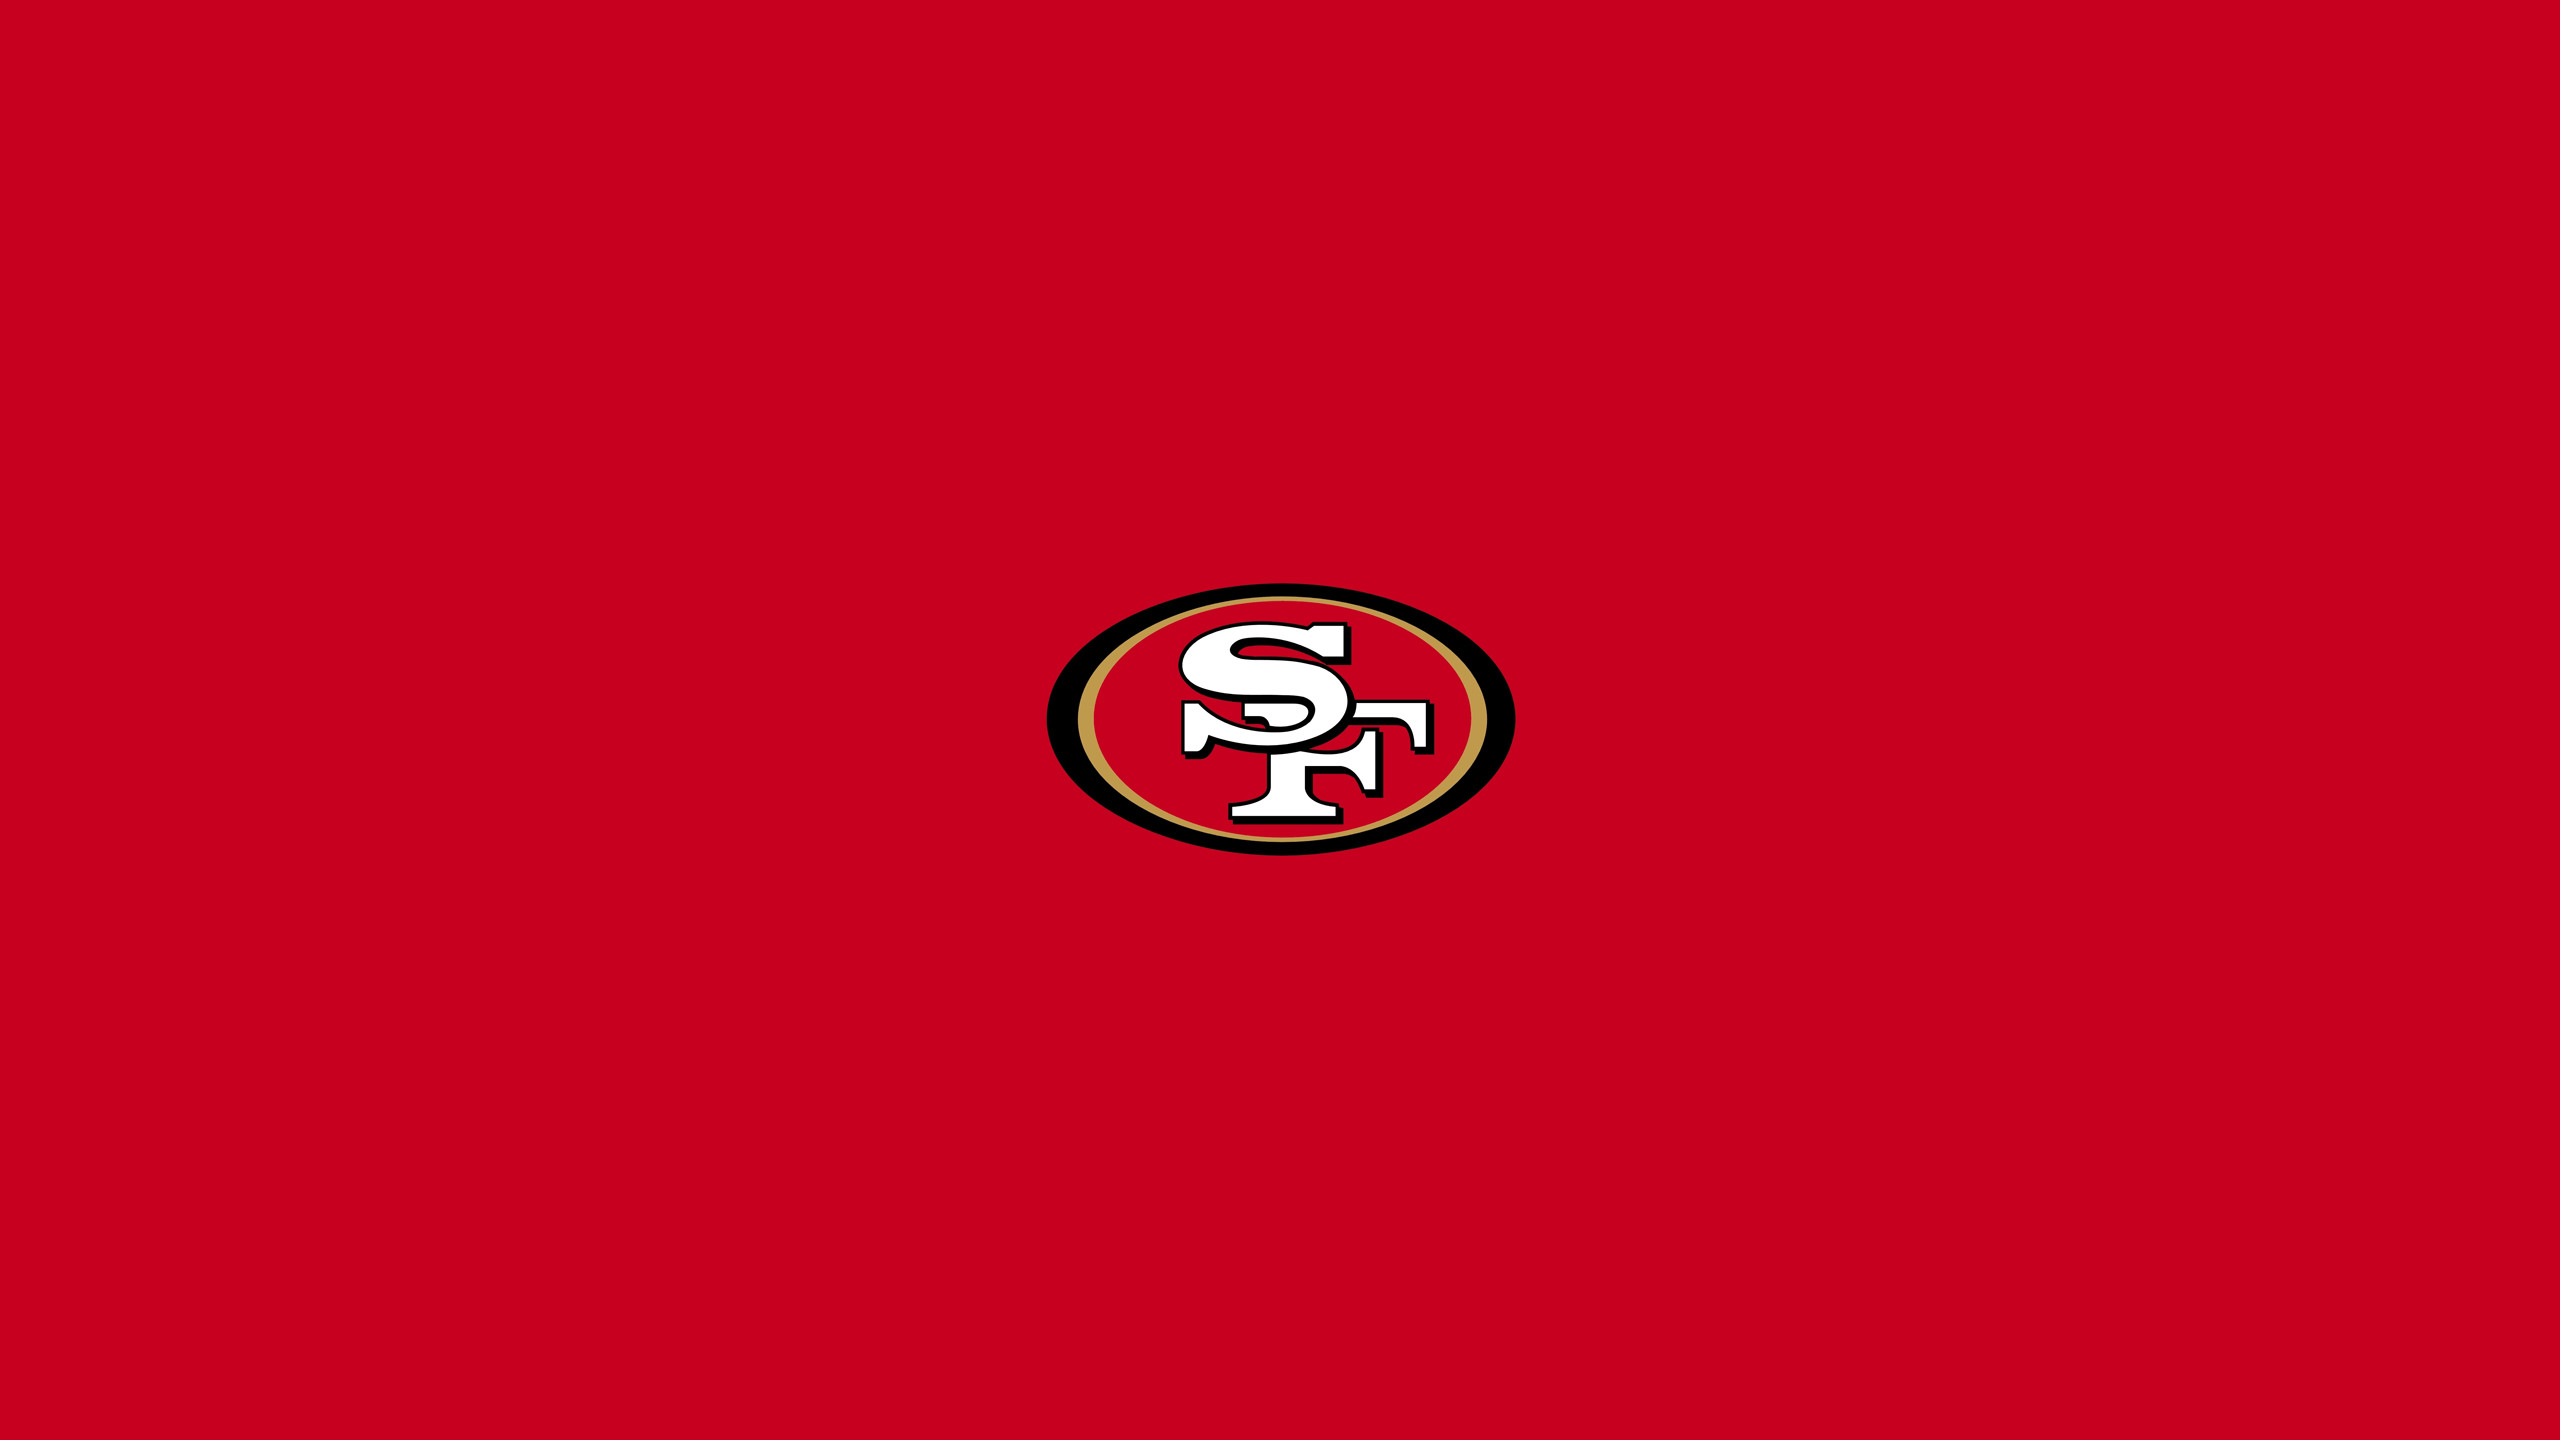 2560x1440 Logo : 49ers Wallpaper 5245 1440x2560px 49ers Wallpaper. 49ers .